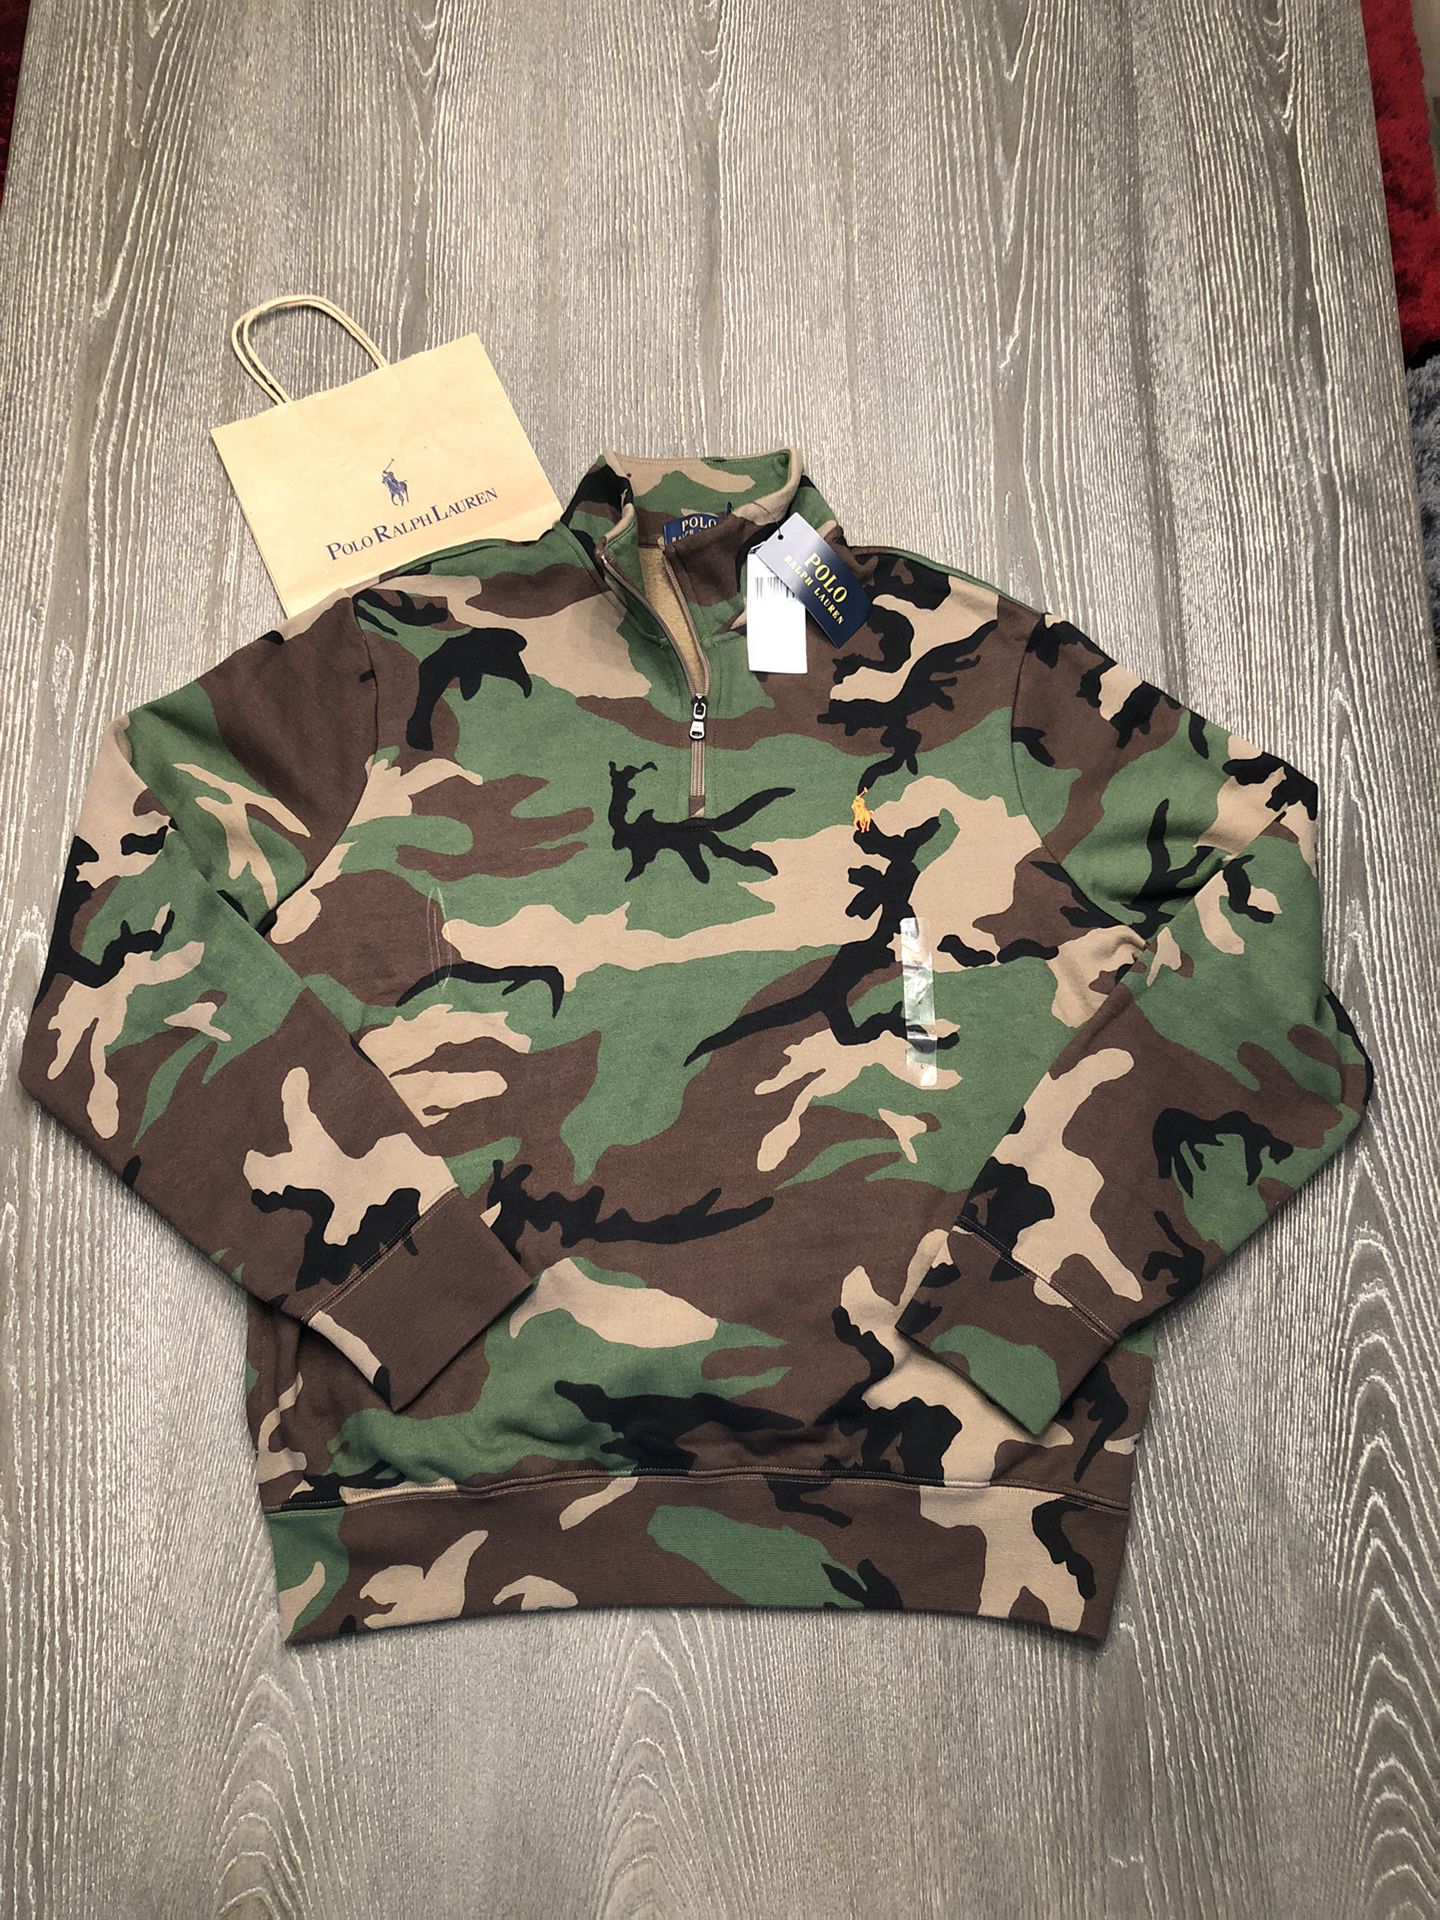 Polo Ralph Lauren 1/4 Zip Camouflage Camo Fleece Sweatshirt SZ L $120 Sportsman NEW